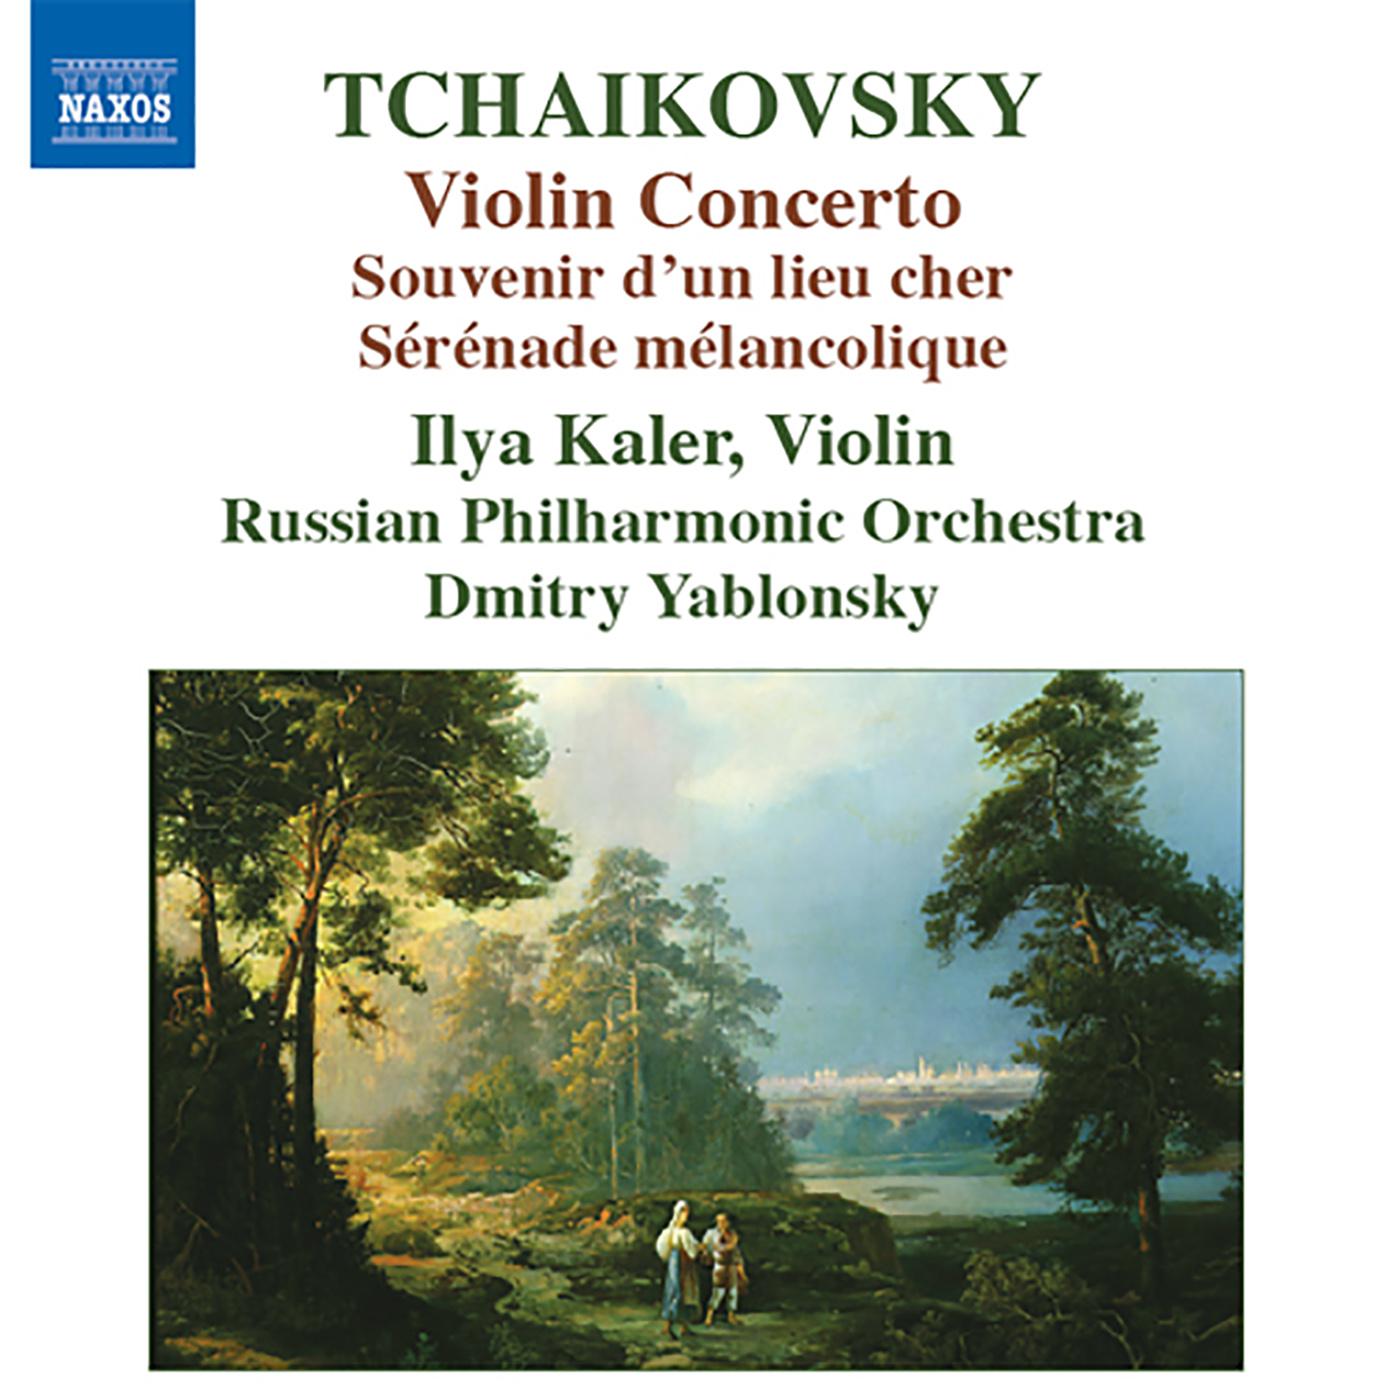 Souvenir d'un lieu cher, Op. 42 (arr. A.K. Glazunov for violin and orchestra): I. Meditation Souvenir d'un lieu cher, Op. 42 (arr. A.K. Glazunov for violin and orchestra)